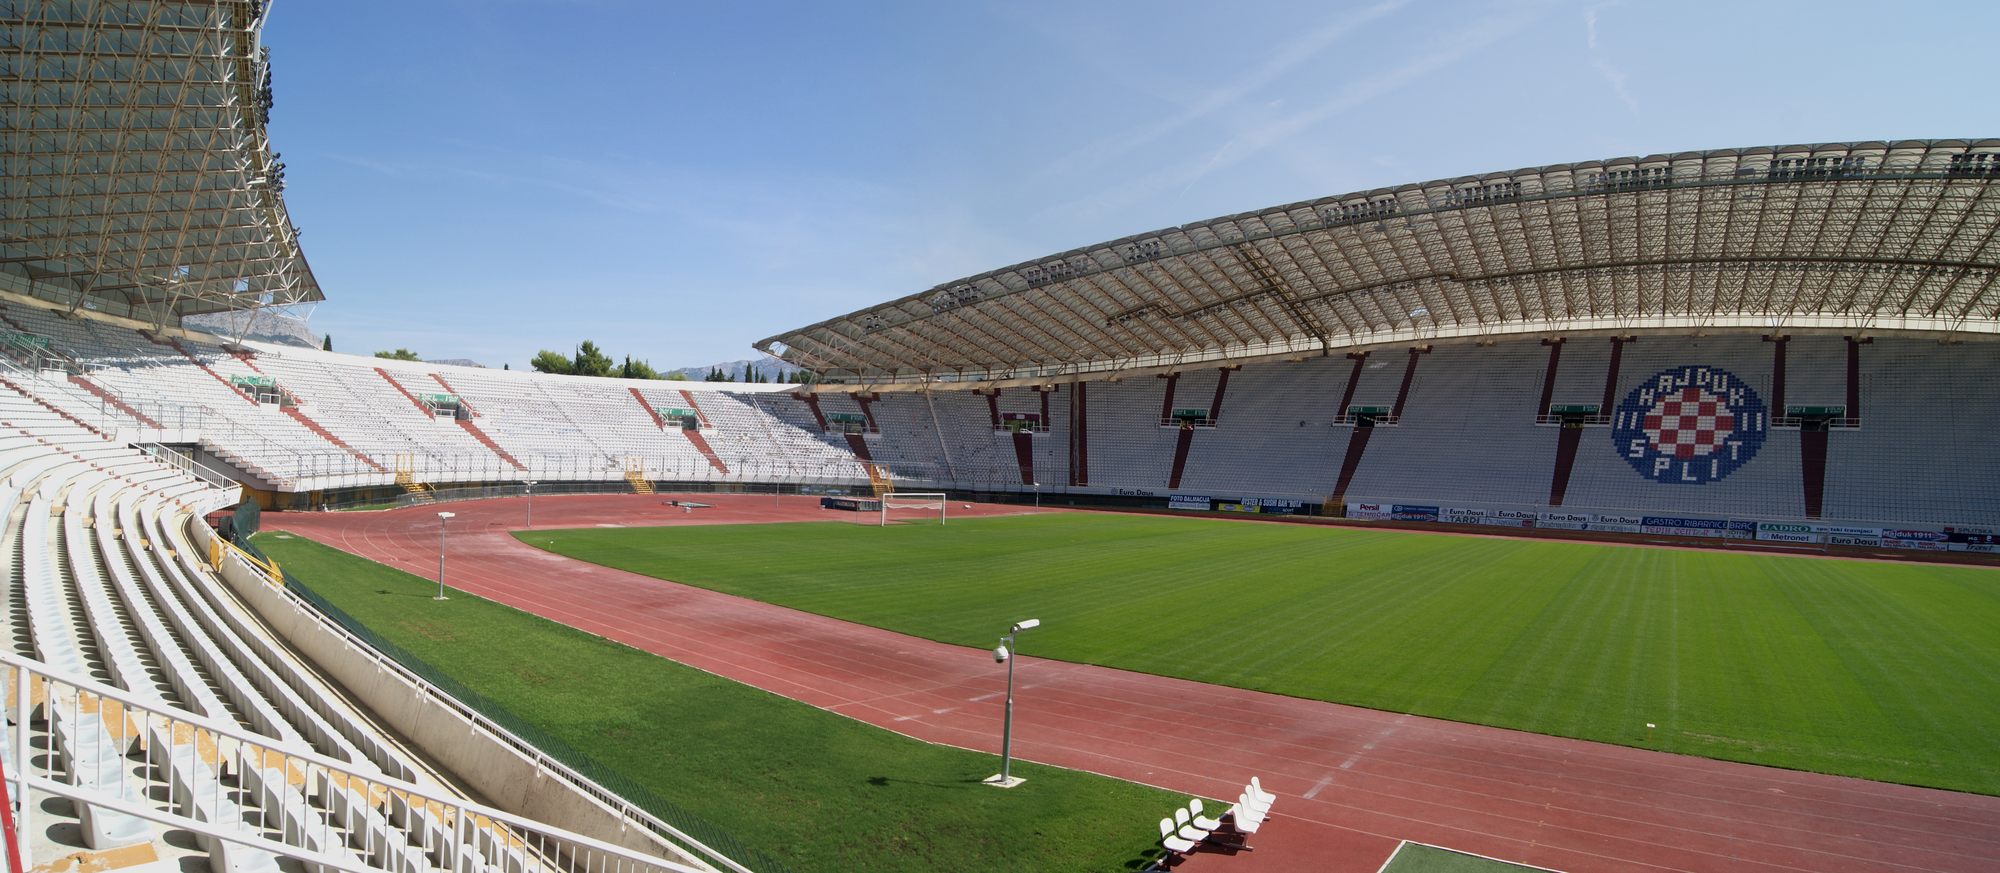 Stadion Poljud – Split, Croatia